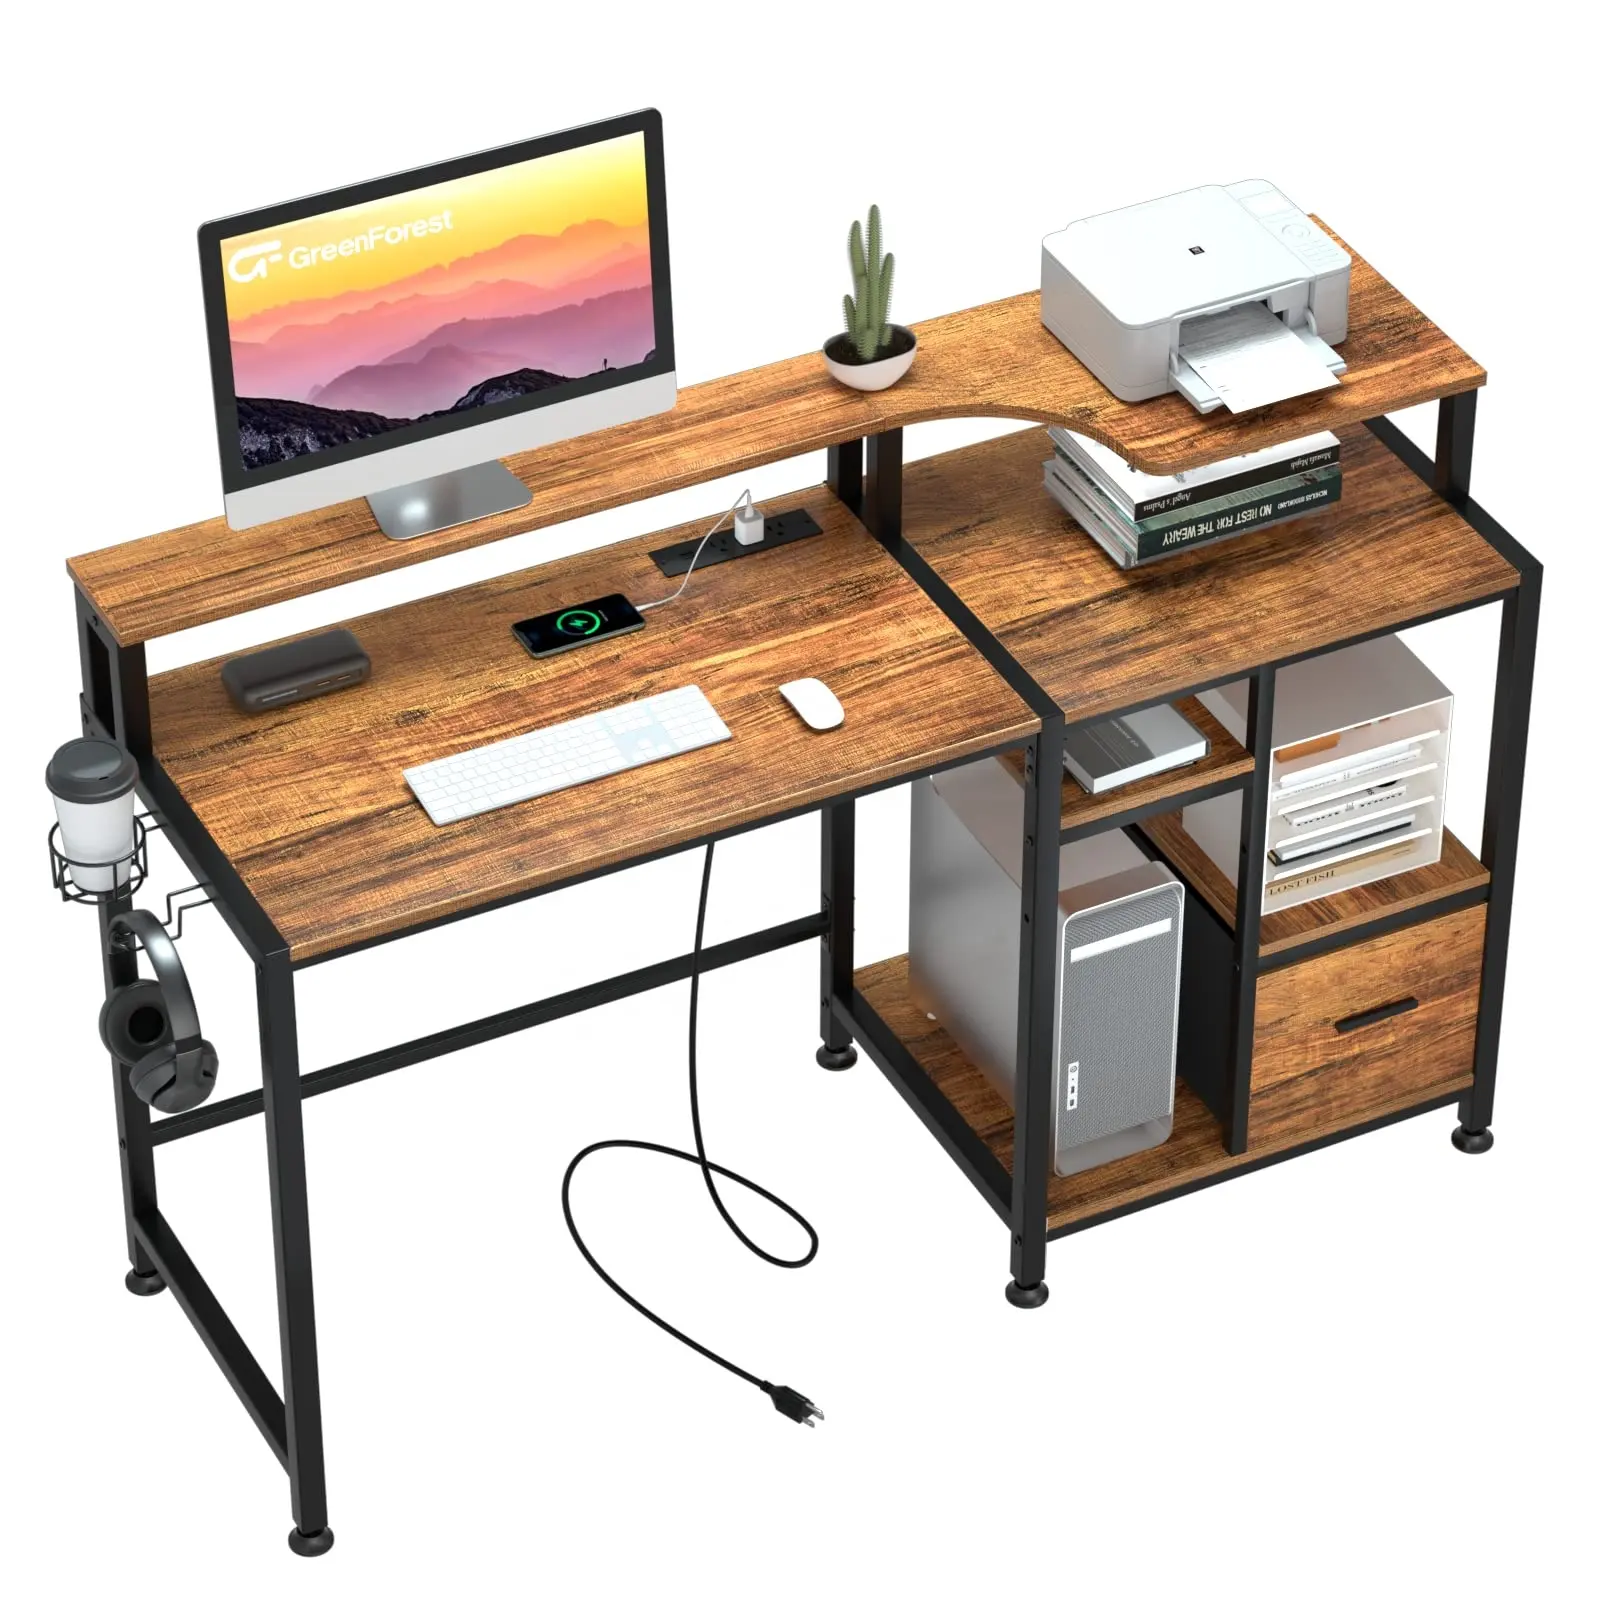 Mesa de escritório moderna para computador com gavetas e estação de carregamento, escrivaninha de madeira com suporte para impressora e suporte para monitor